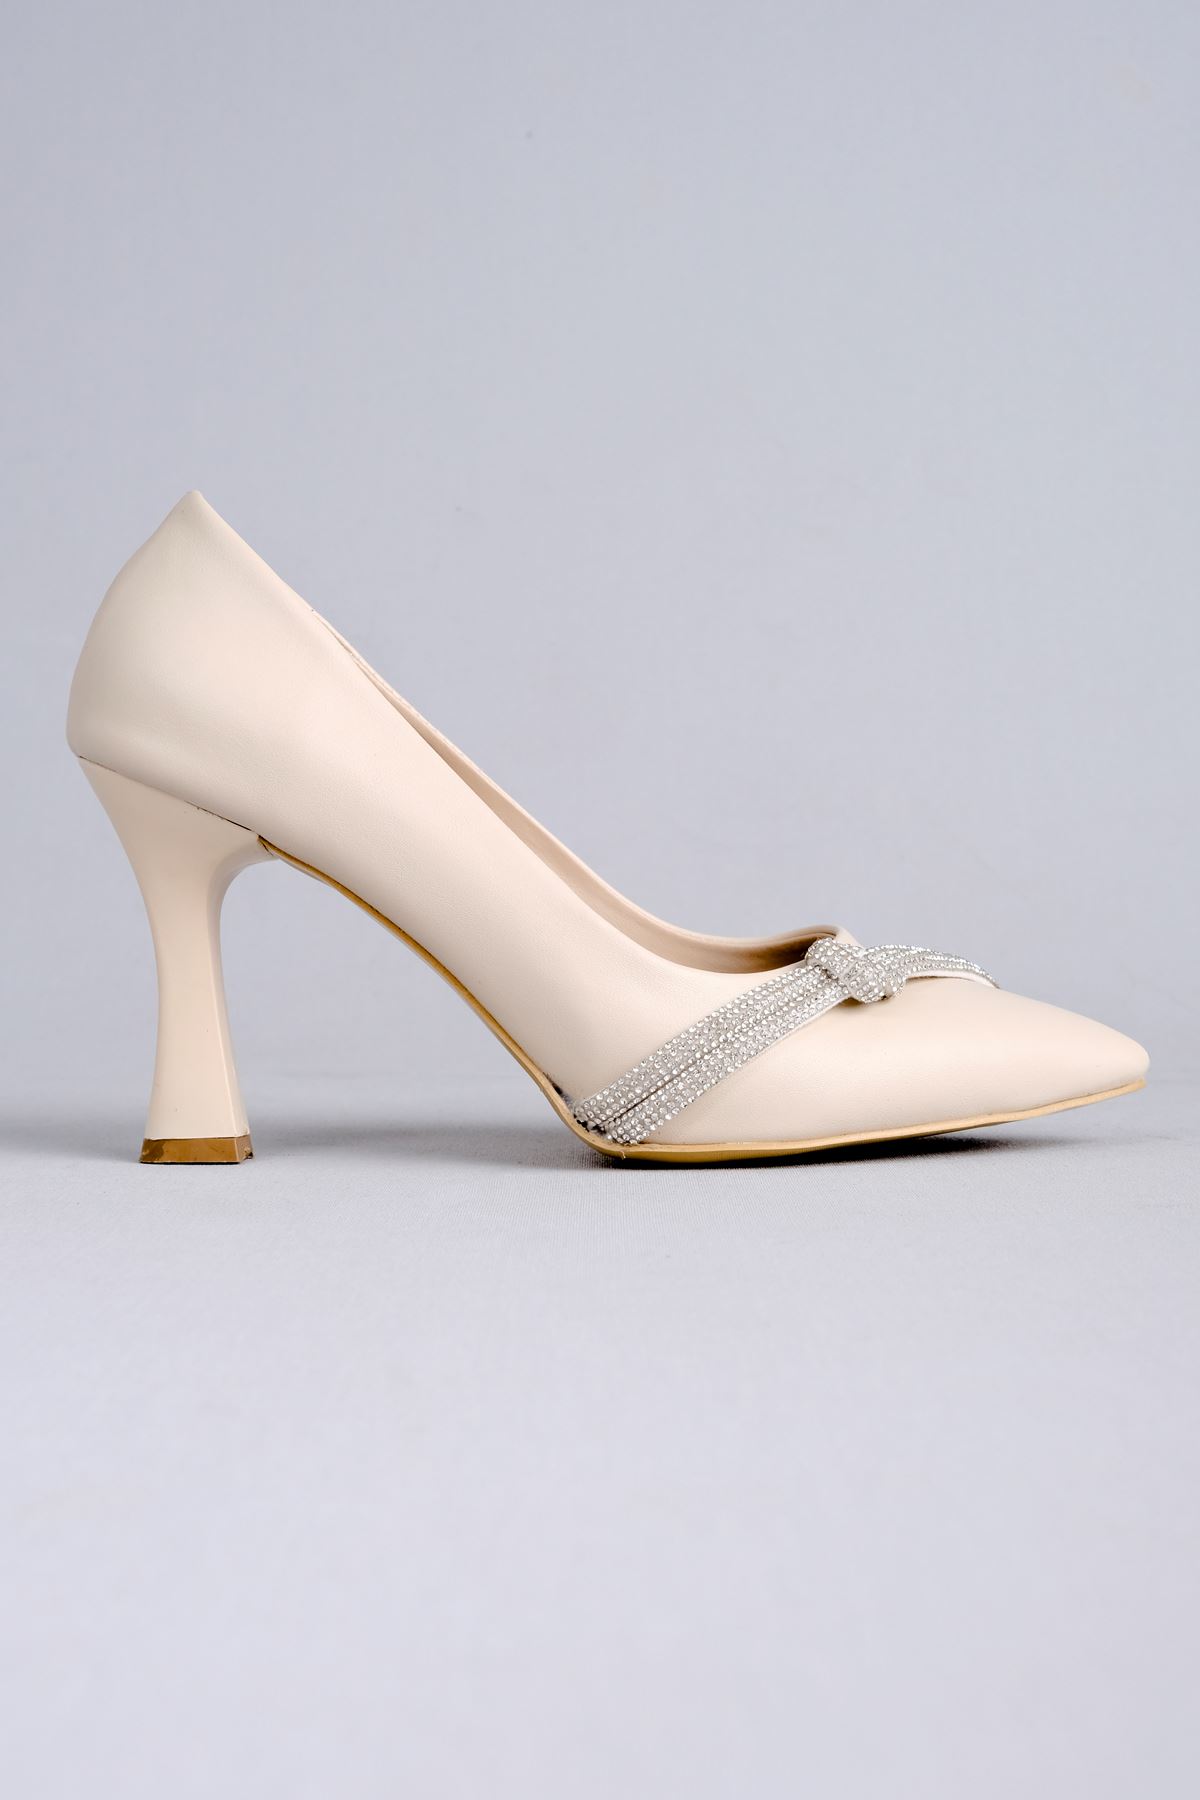 Lavender Kadın Topuklu Ayakkabı Düğüm Taşlı-Krem